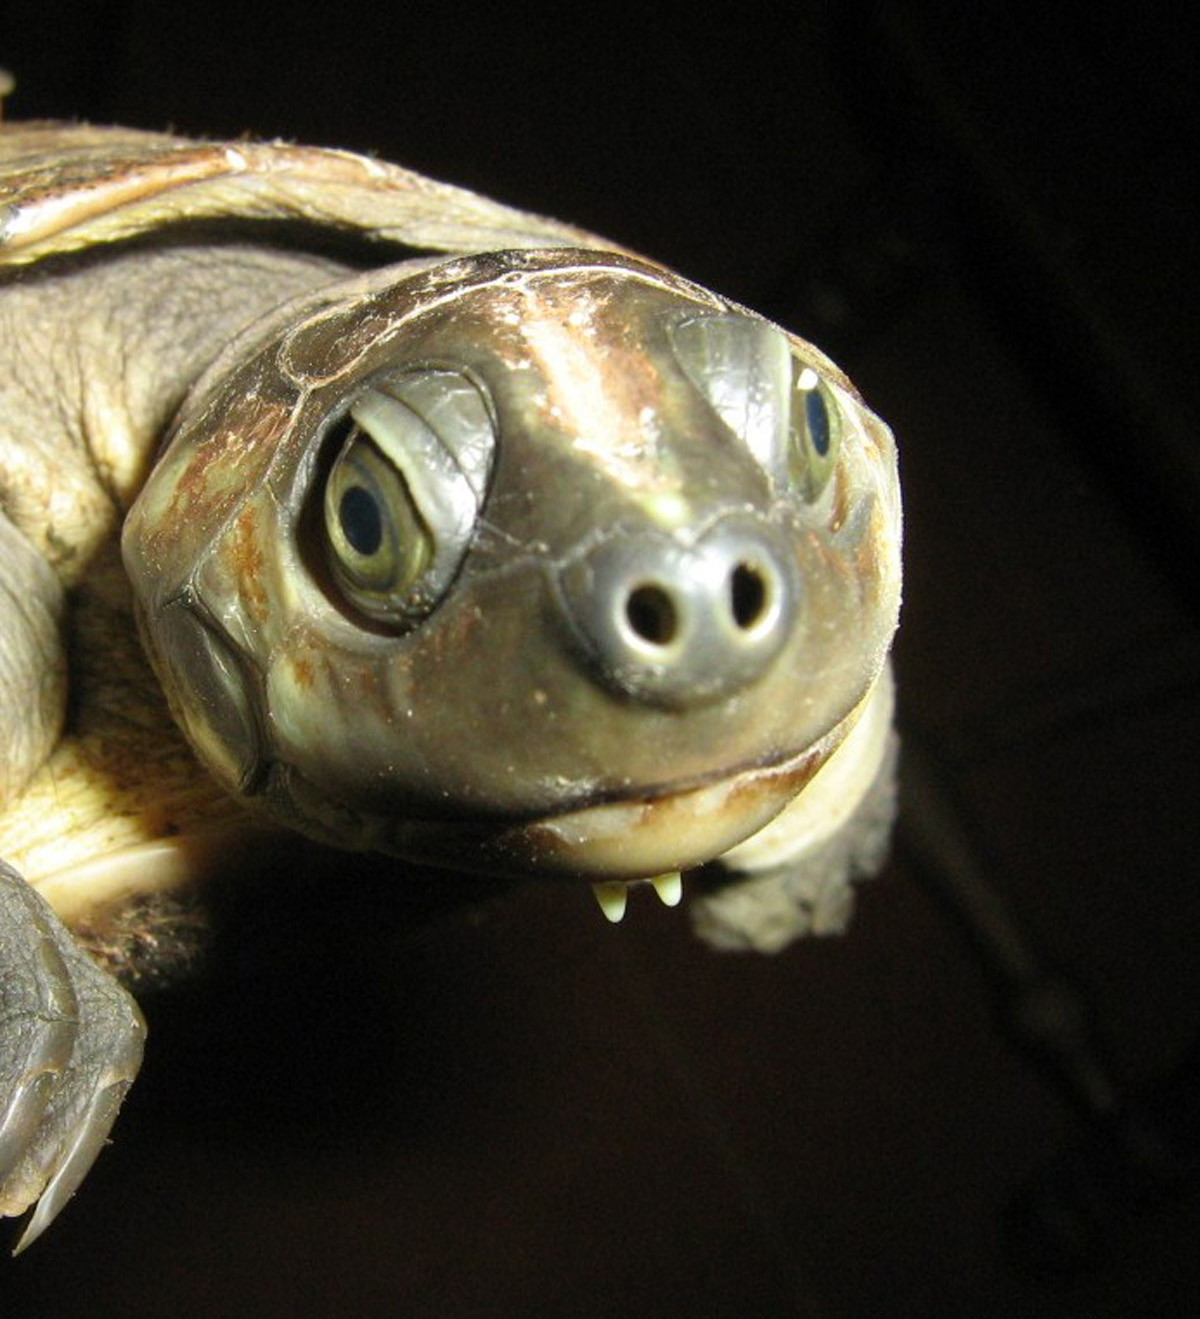 Podocnemis lewyana, tortuga que habita el río Prado (Tolima). Fotos: cortesía Adriana González